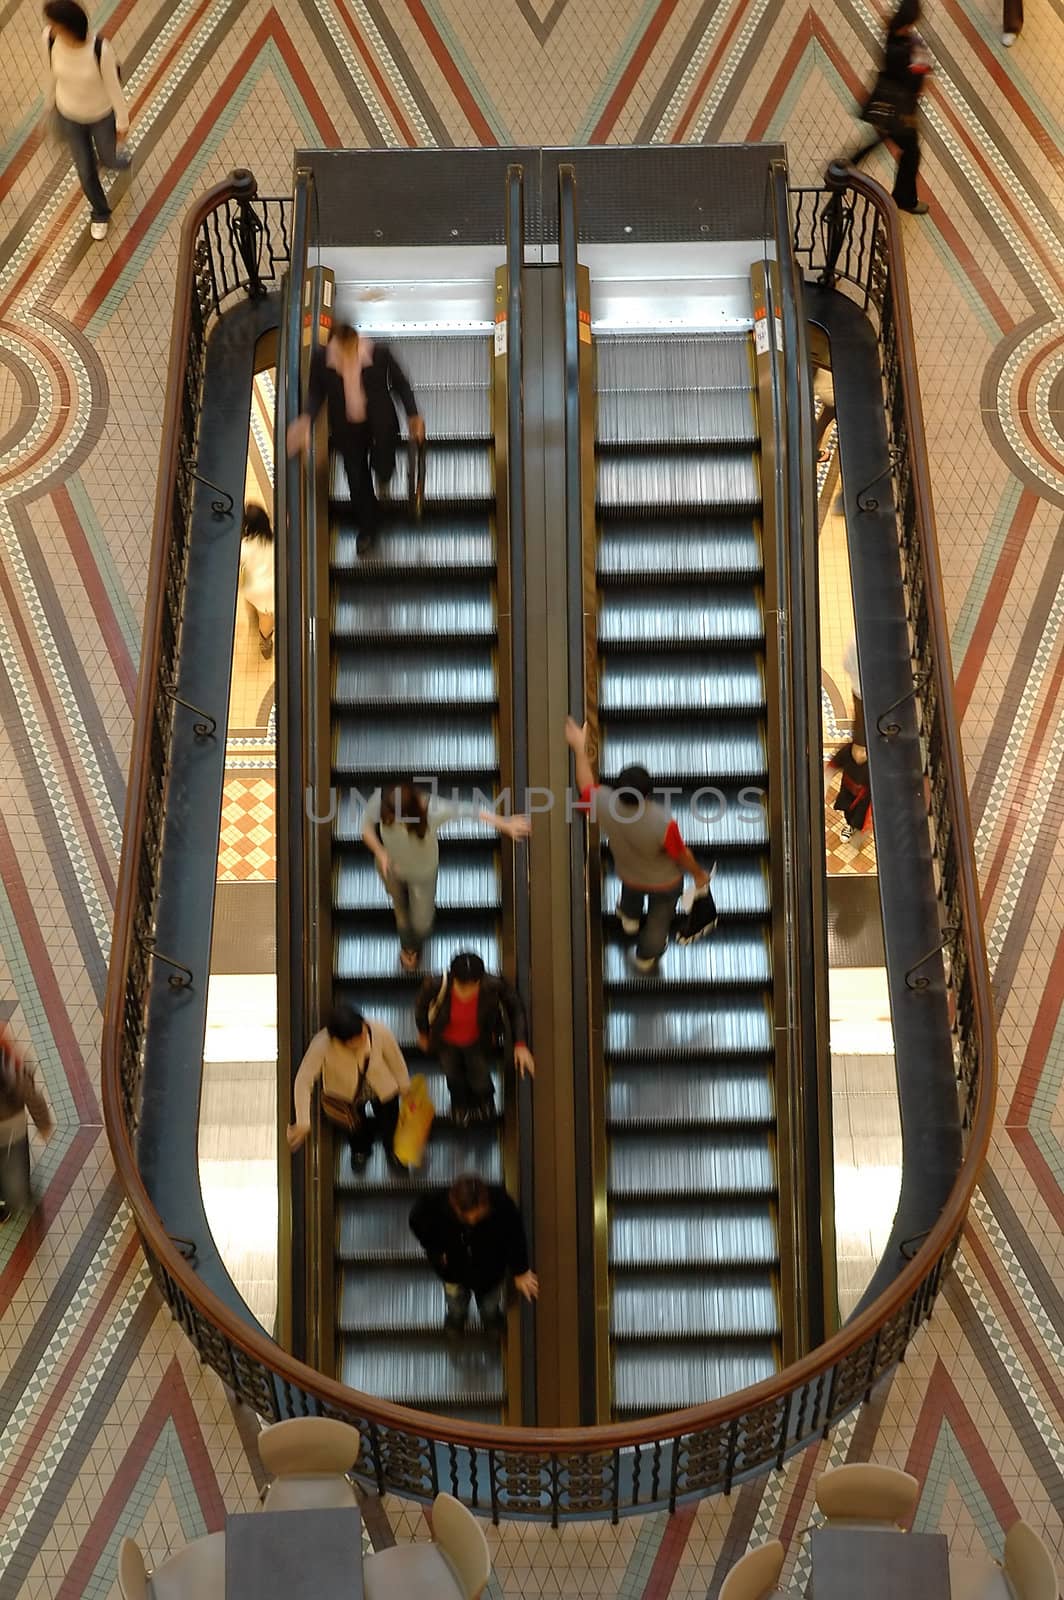 elevators in motion, blured people, photo taken in queen victoria building in sydney